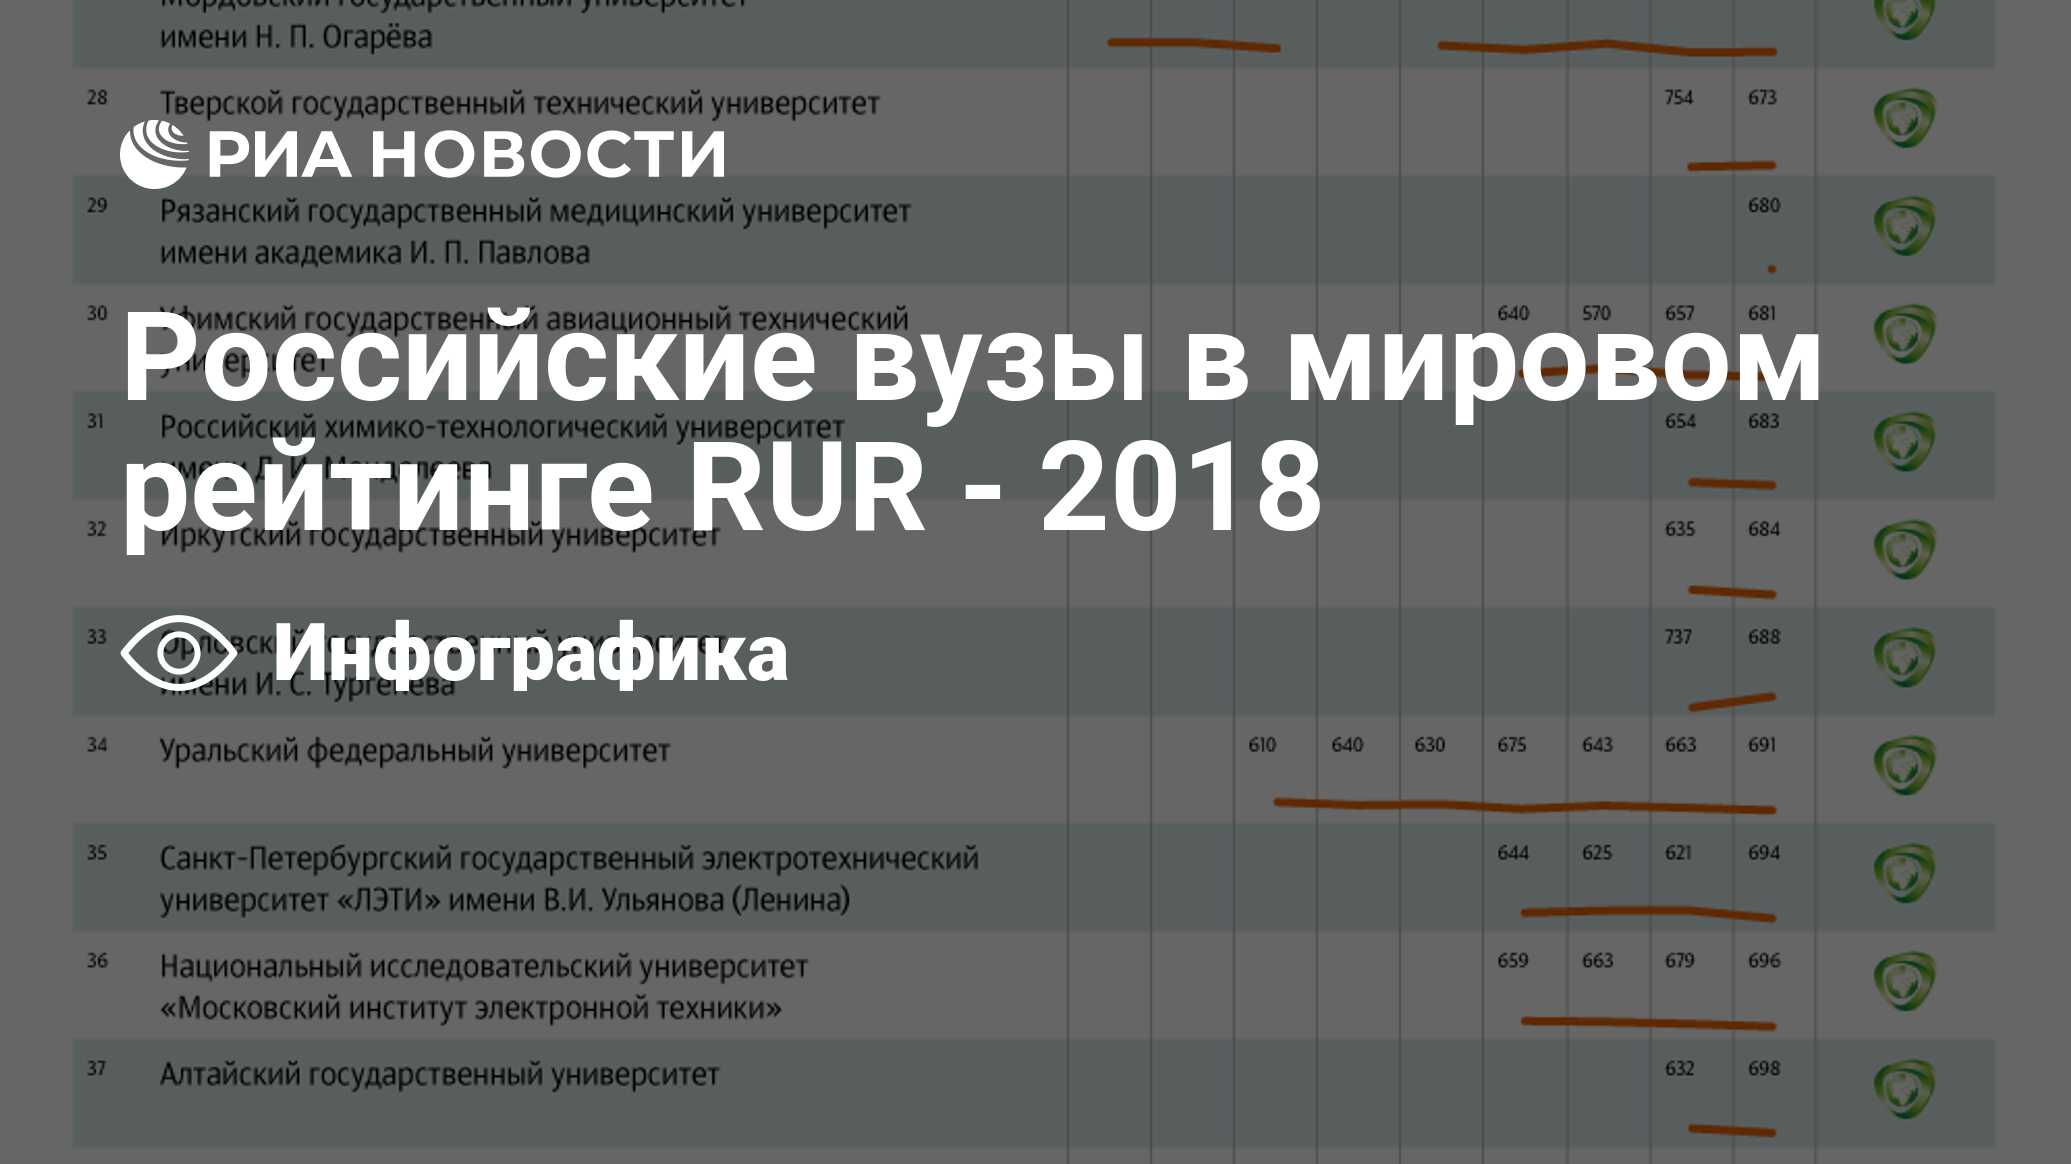 Медицинские вузы россии рейтинг по качеству